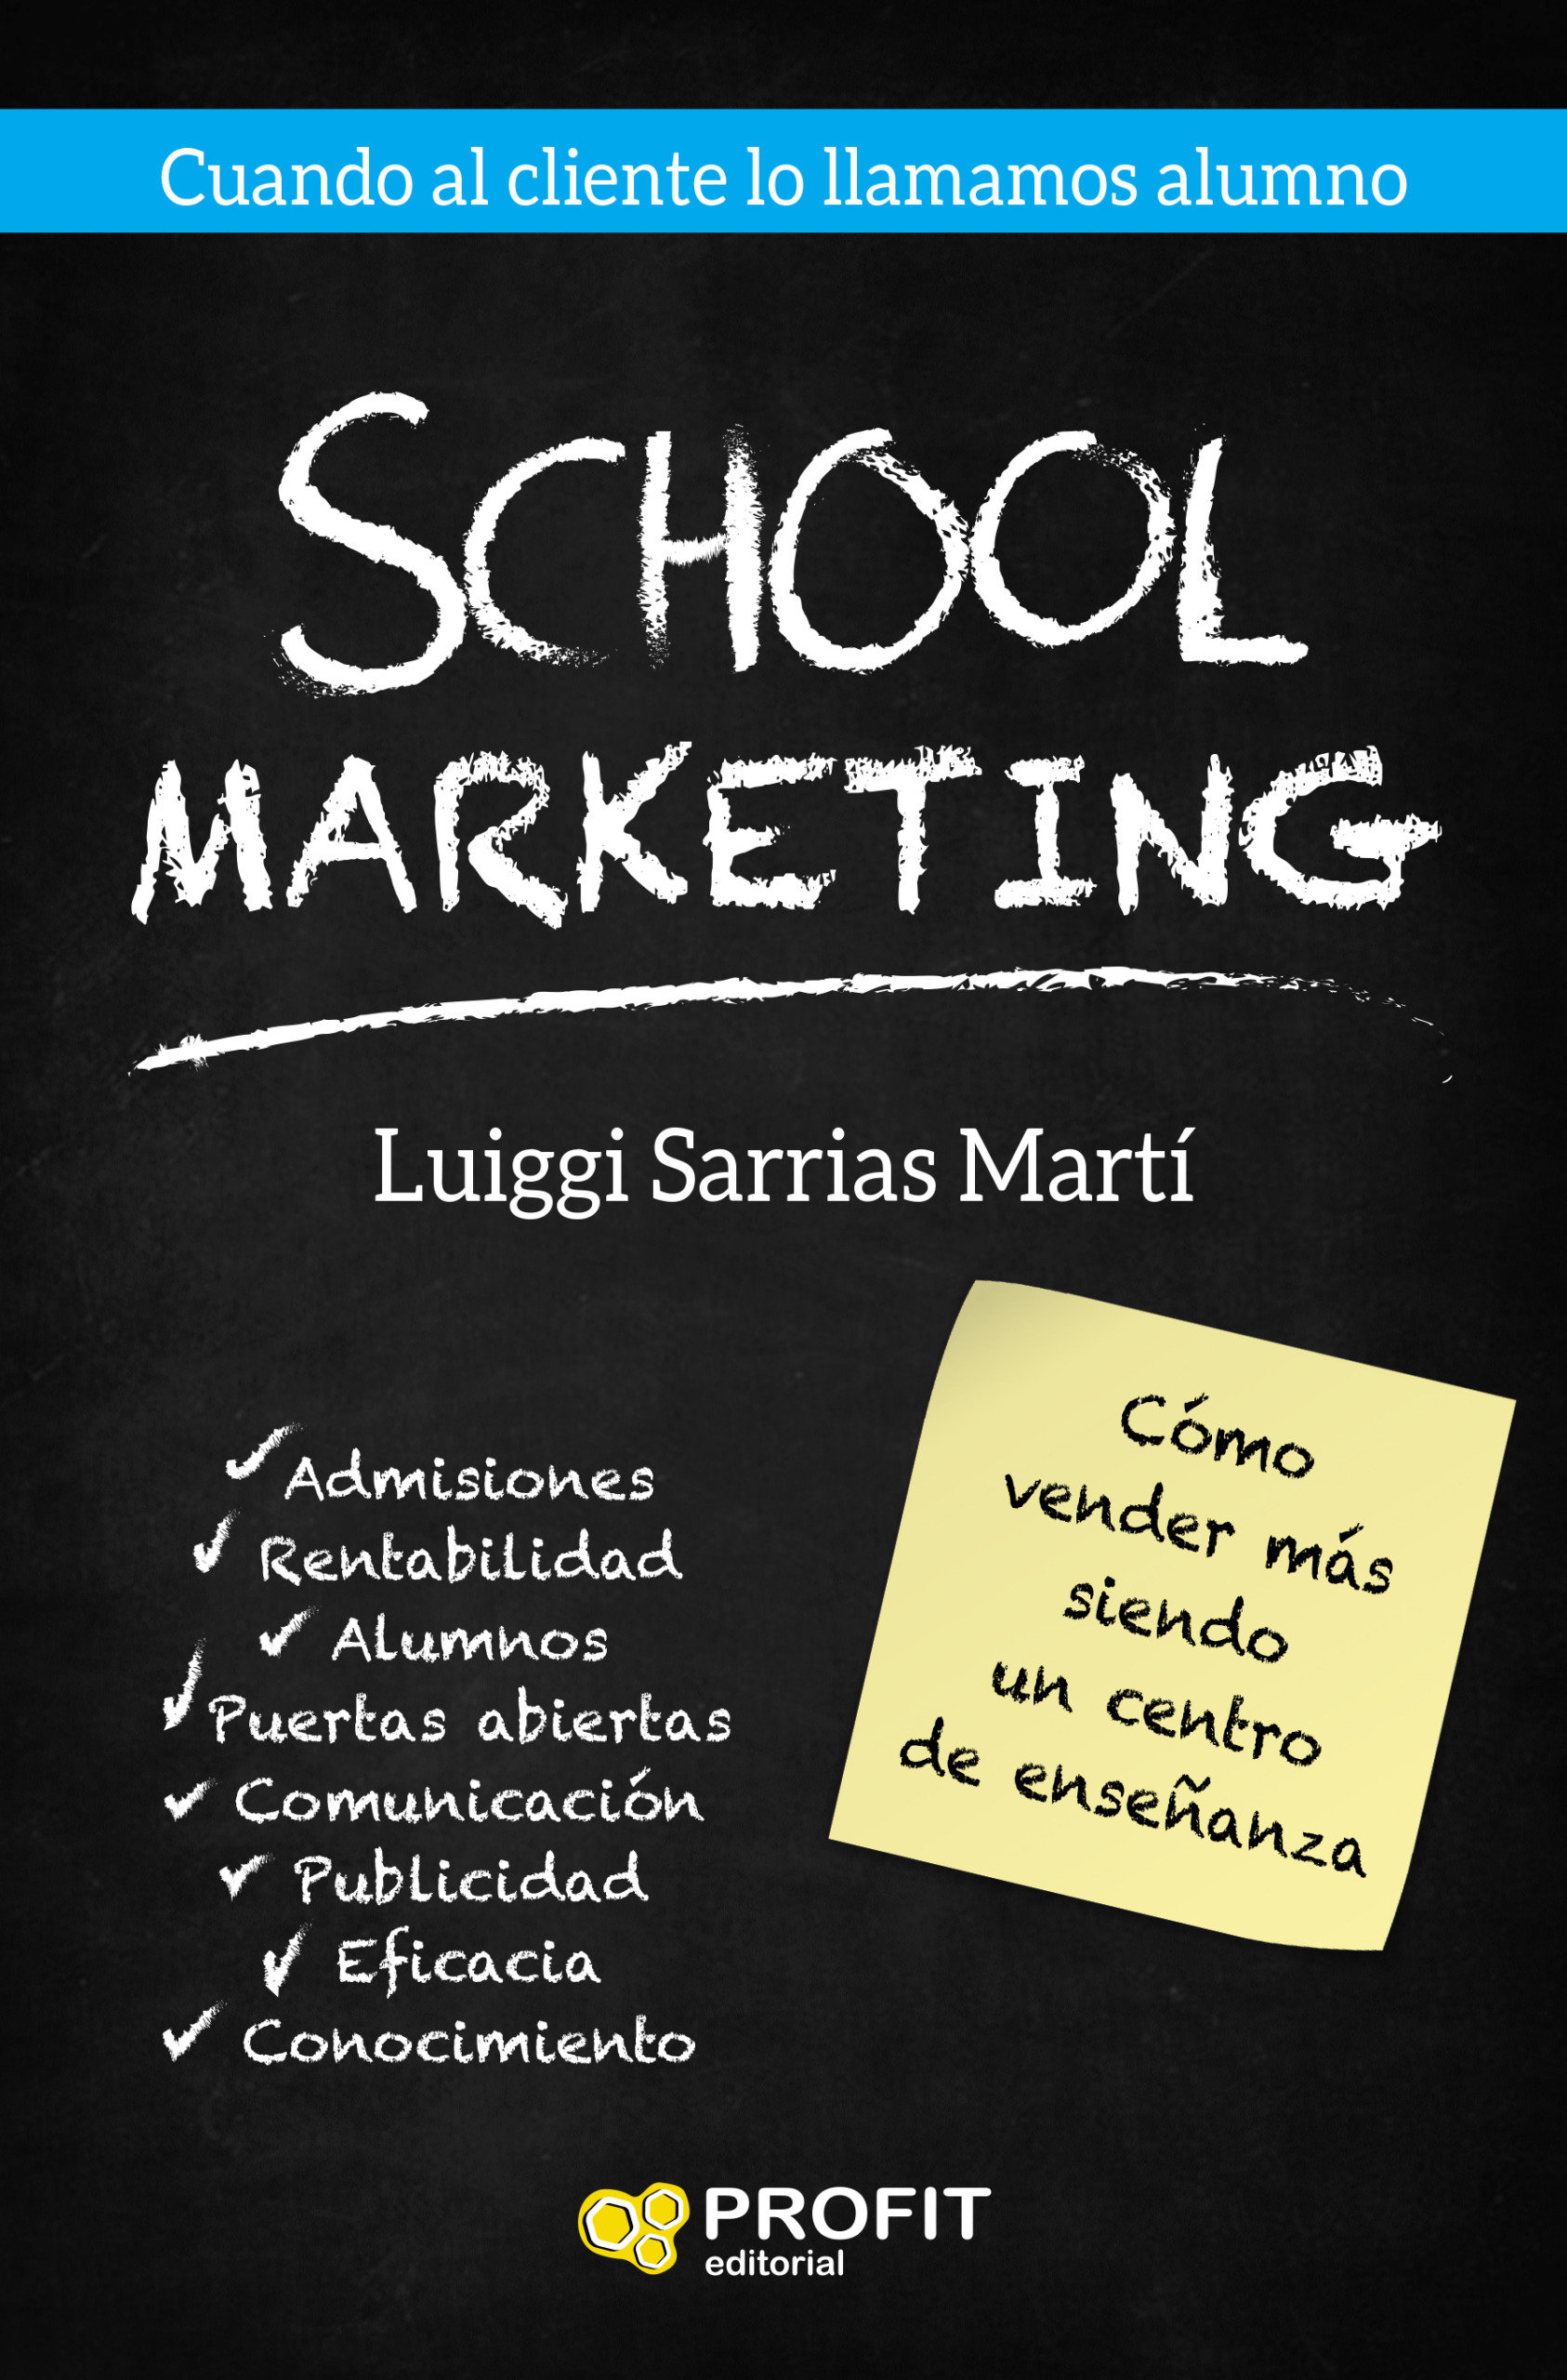 School Marketing | Luiggi Sarrias Martí | Libros de empresa y negocios